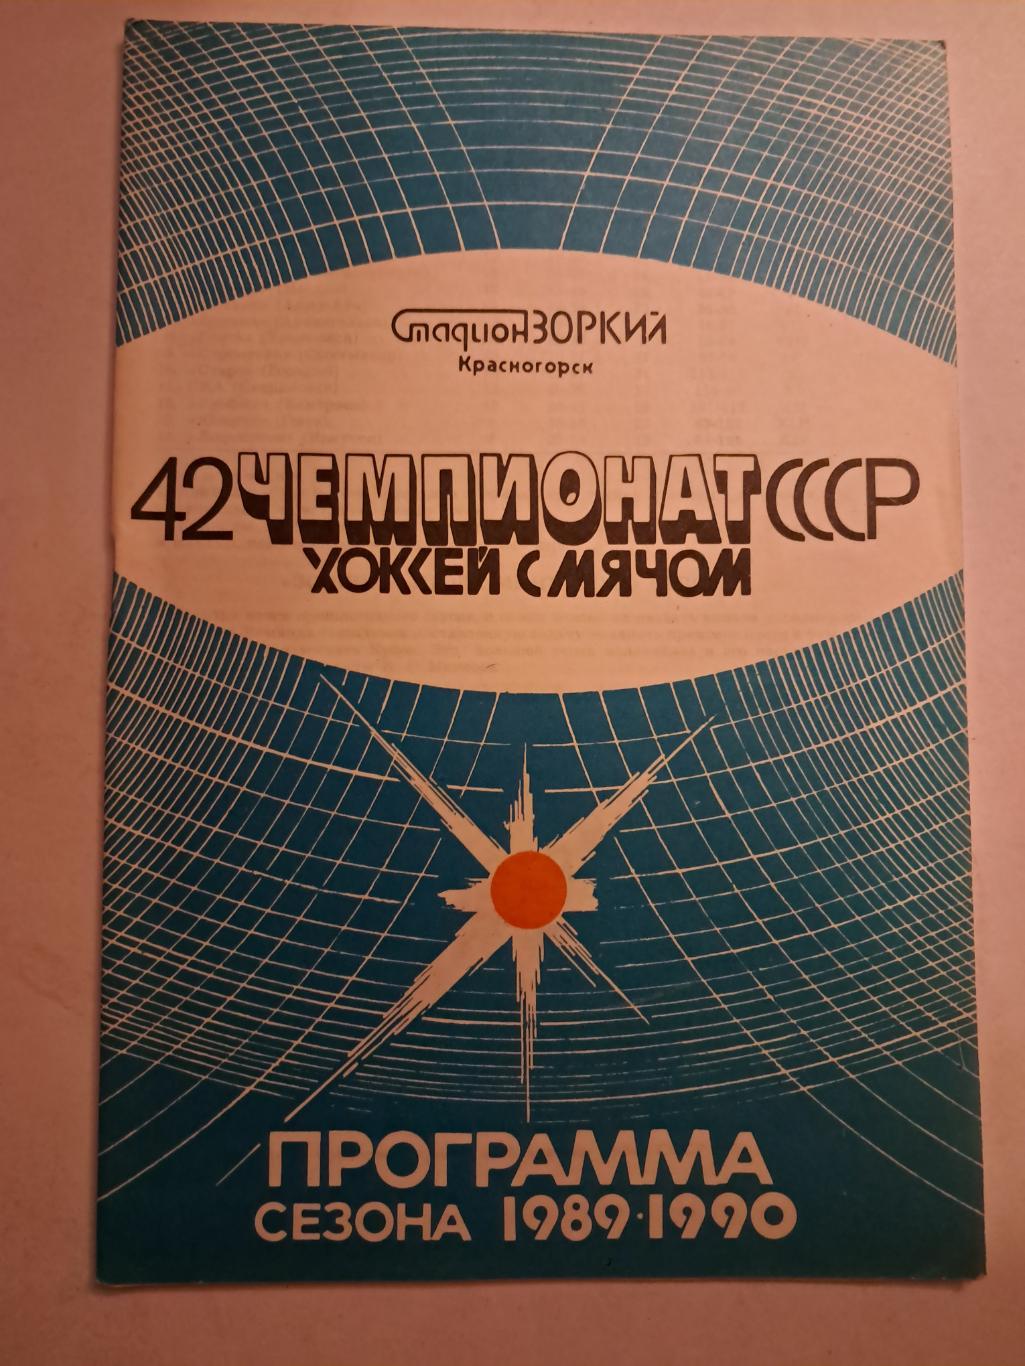 Зоркий Красногорск Программа сезона 1989/90